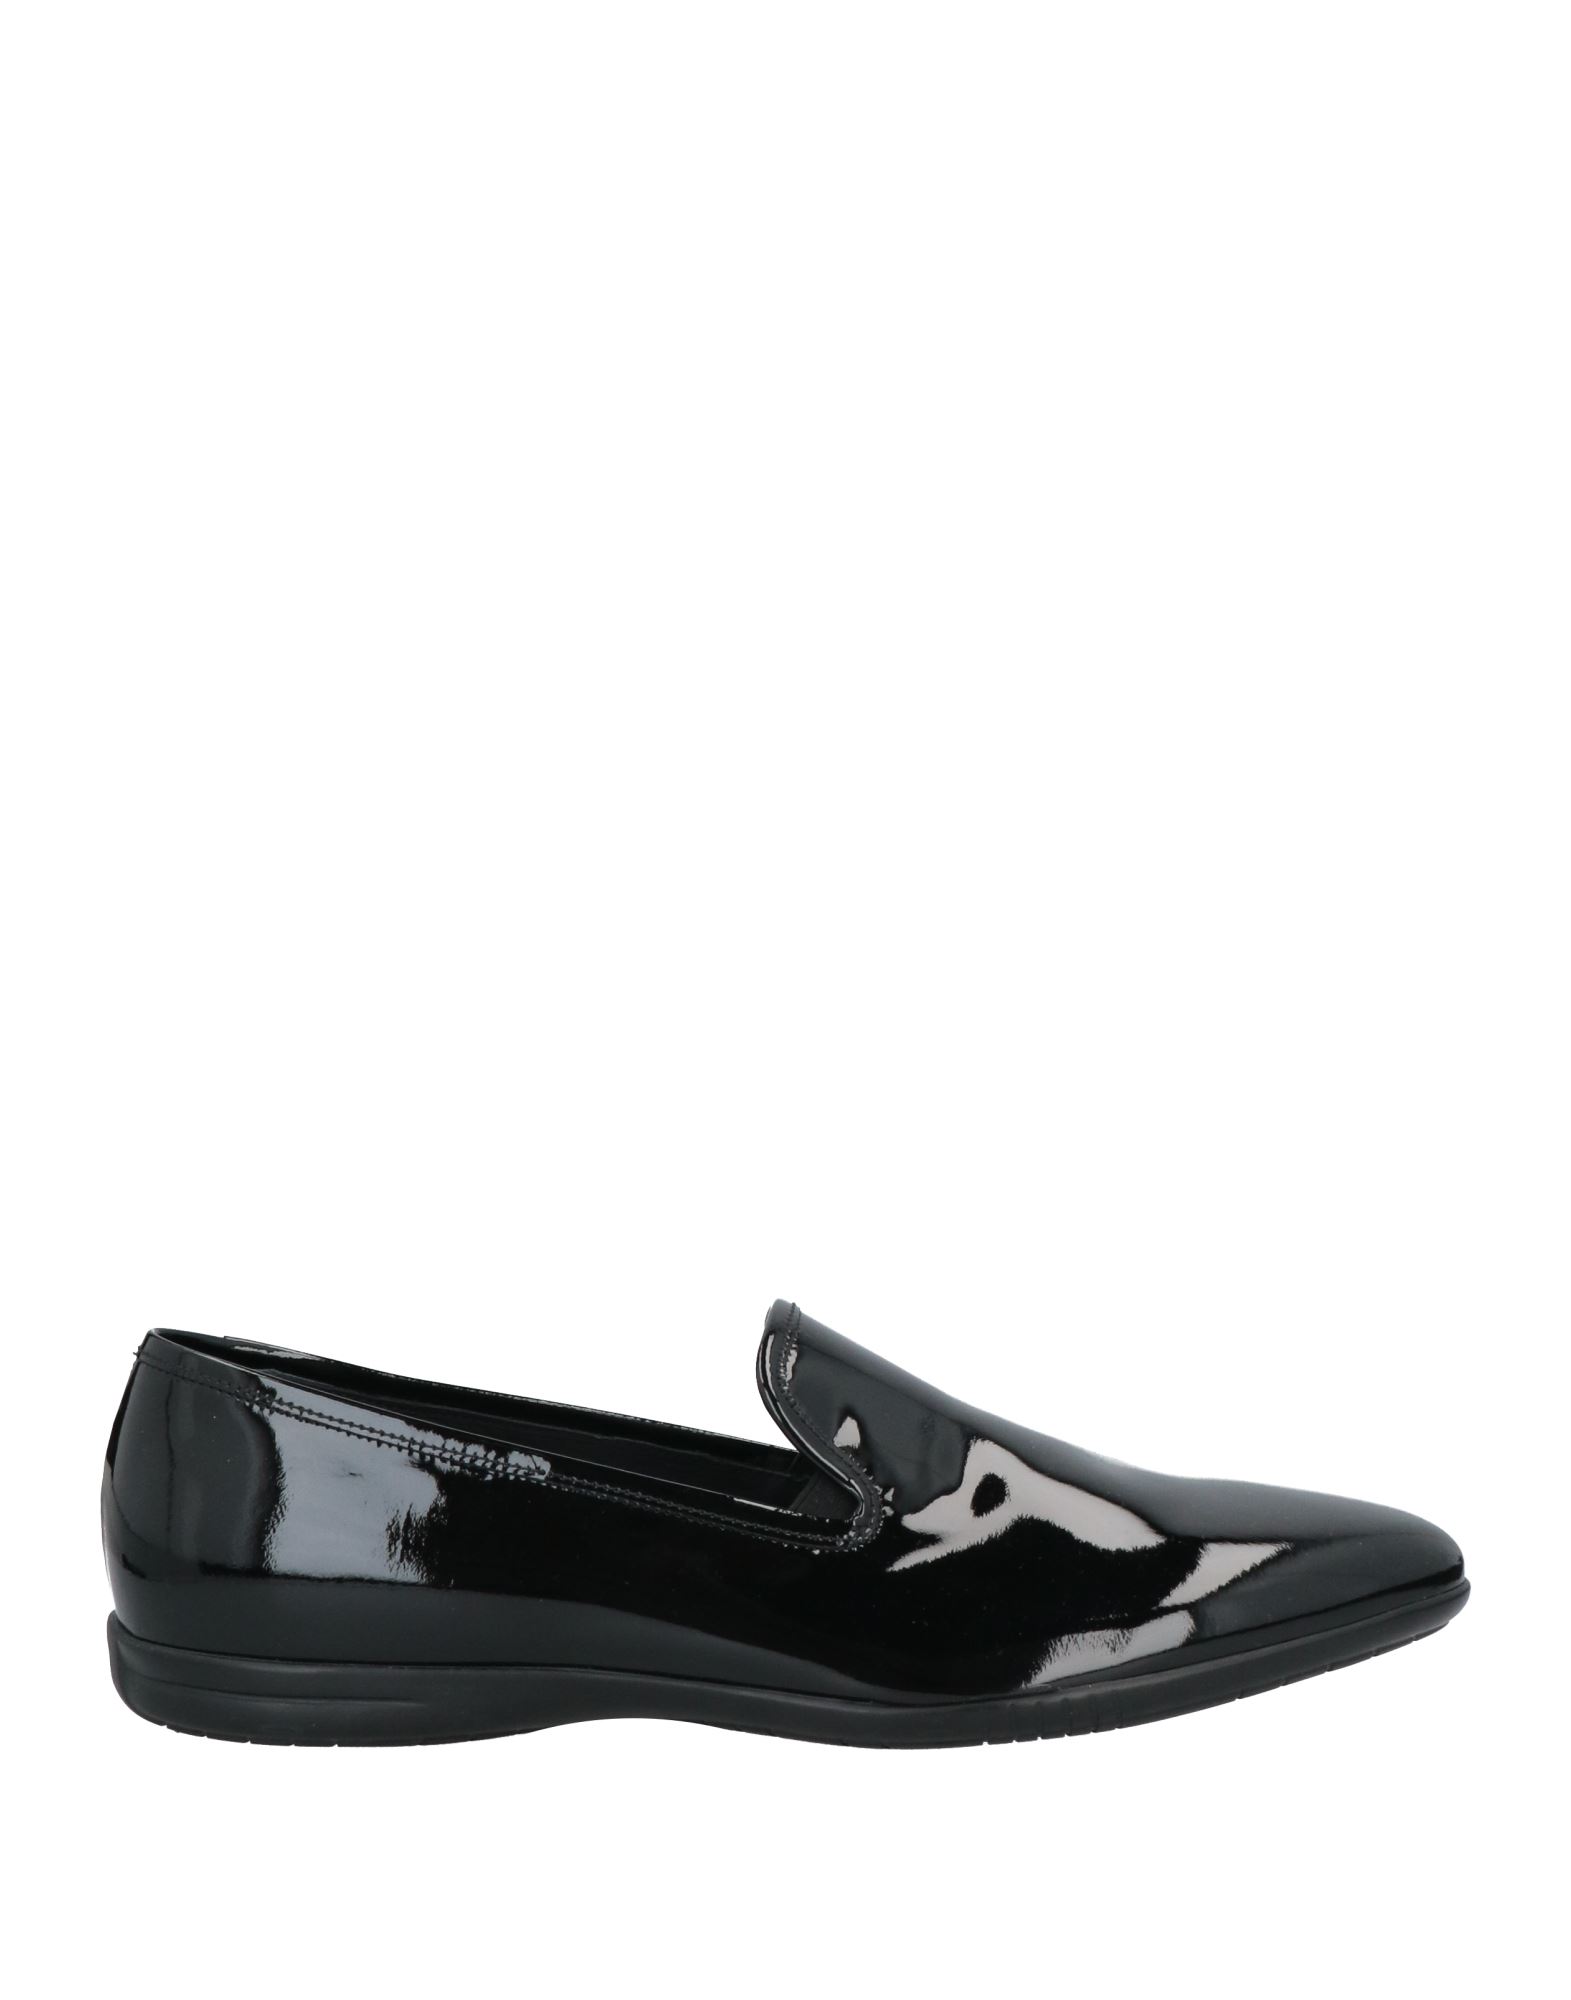 アルベルト ガルディアーニ／ALBERTO GUARDIANI シューズ ビジネスシューズ 靴 ビジネス メンズ 男性 男性用レザー 革 本革 ブラック 黒  GU73053H ウイングチップ スタッズ